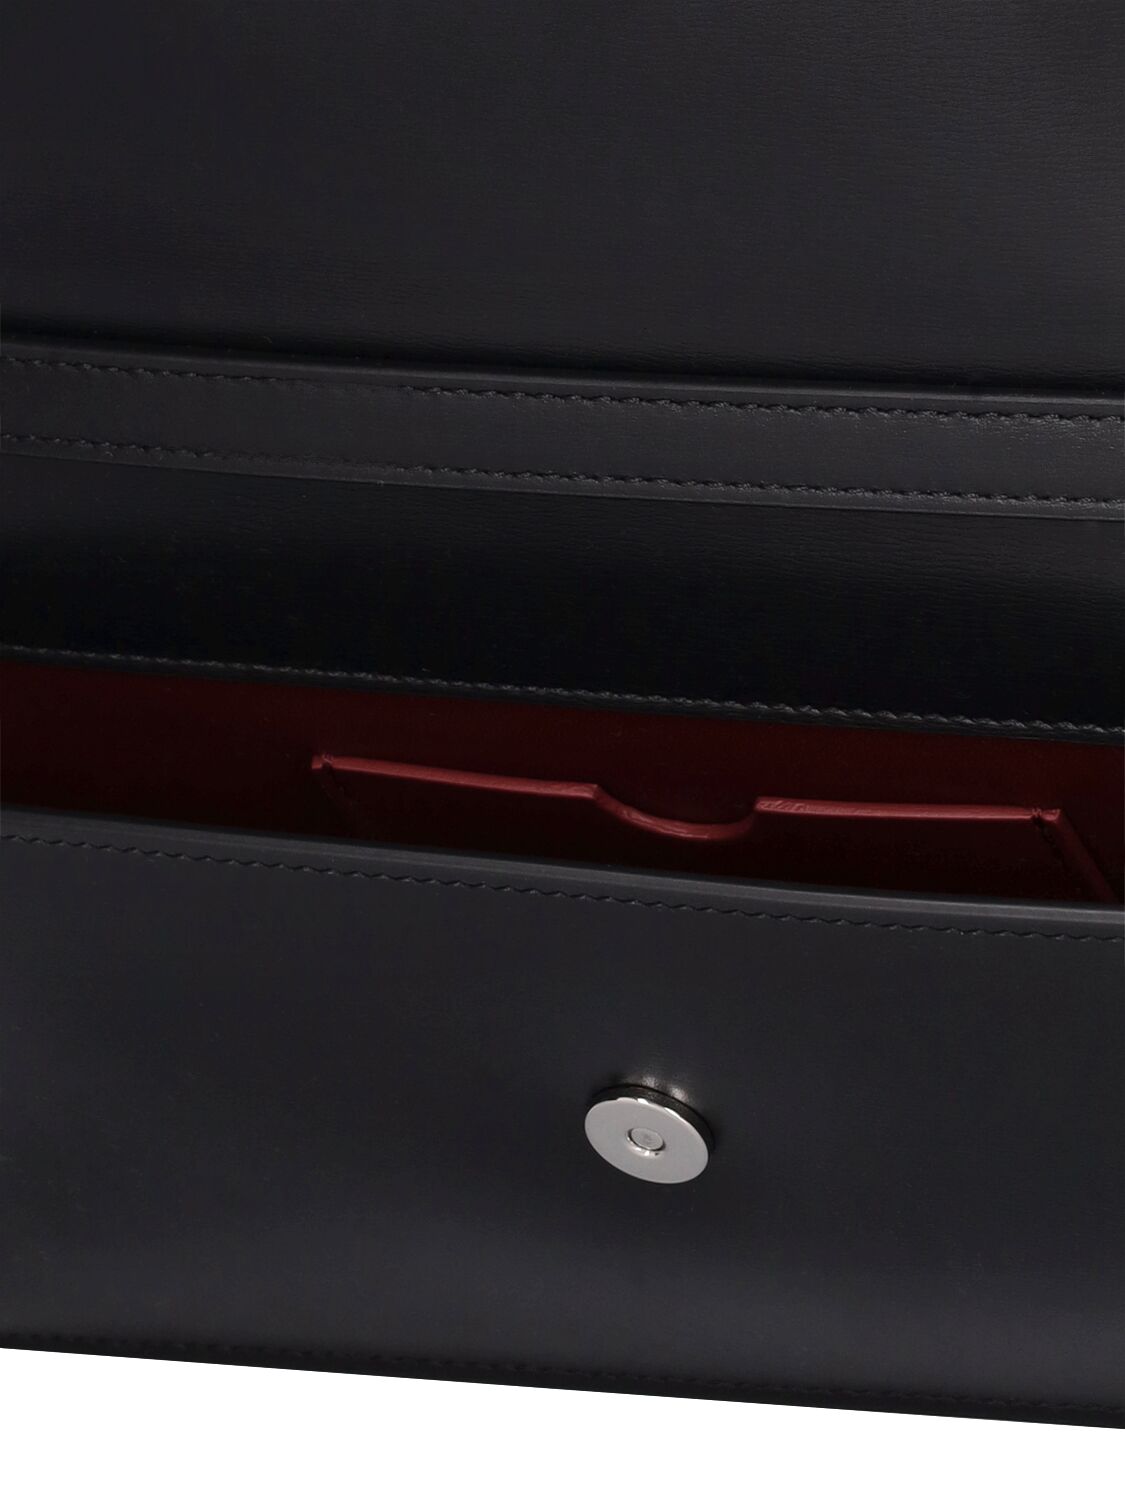 Shop Off-white Jitney 1.0 Leather Shoulder Bag In Black